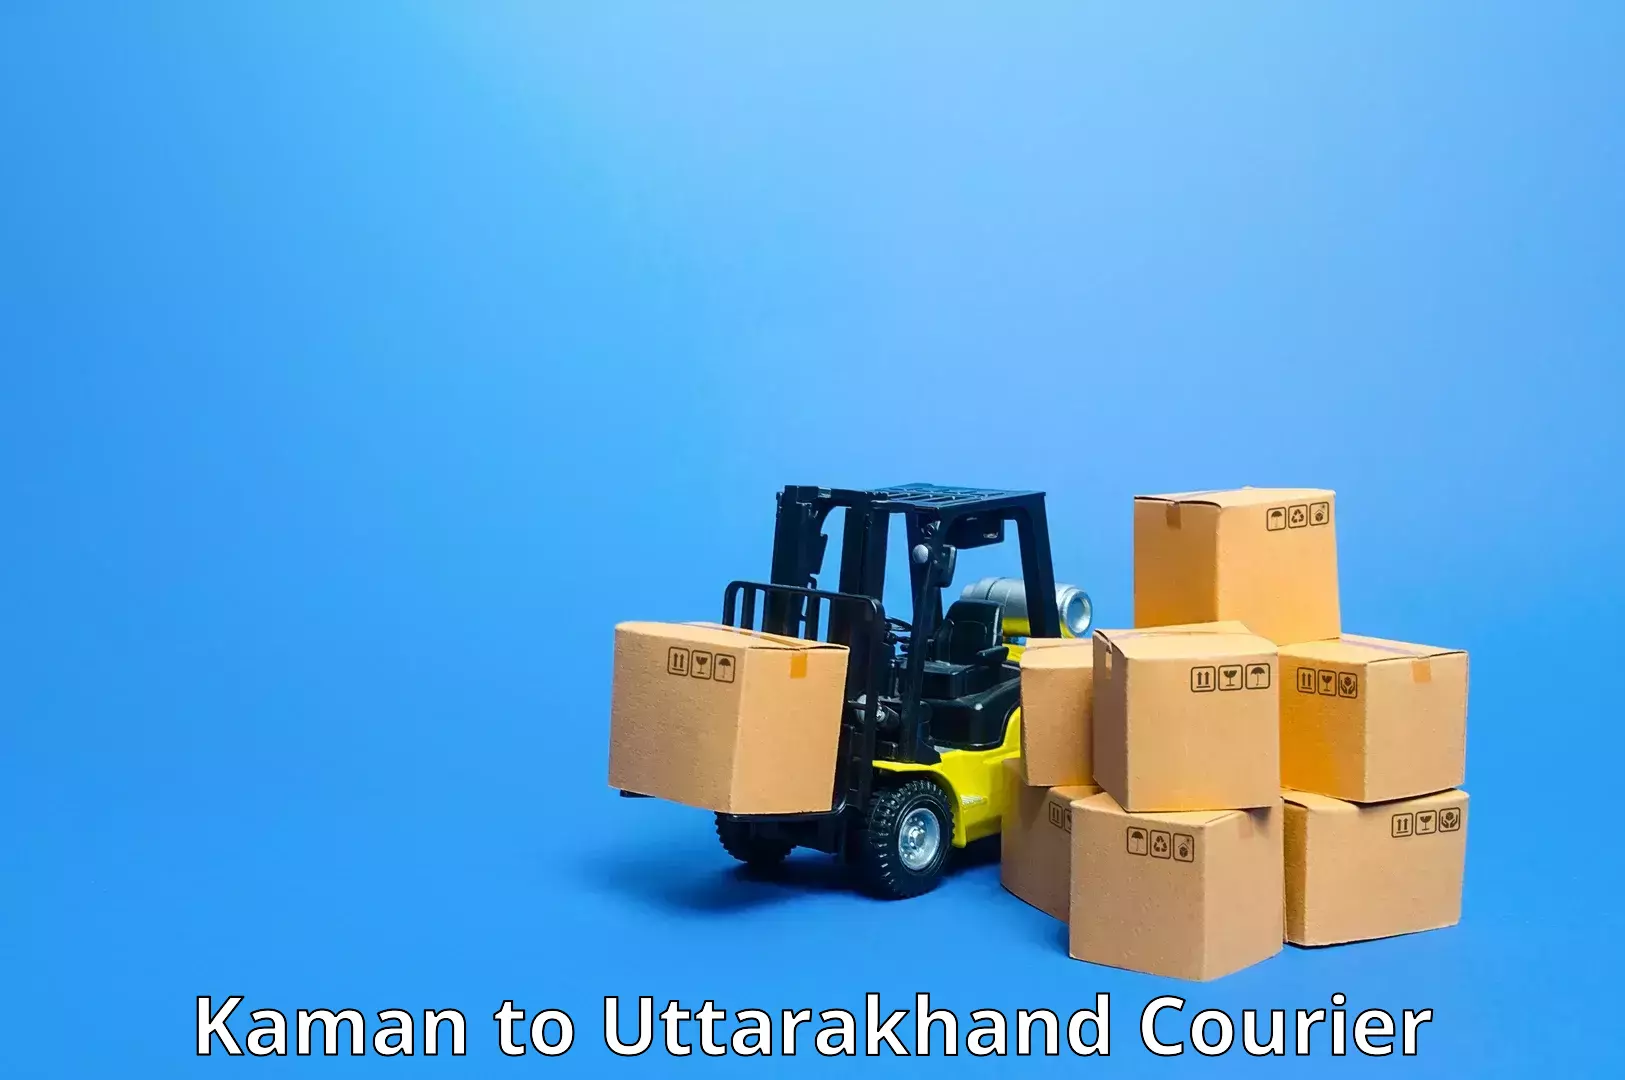 Full-service courier options Kaman to Uttarakhand